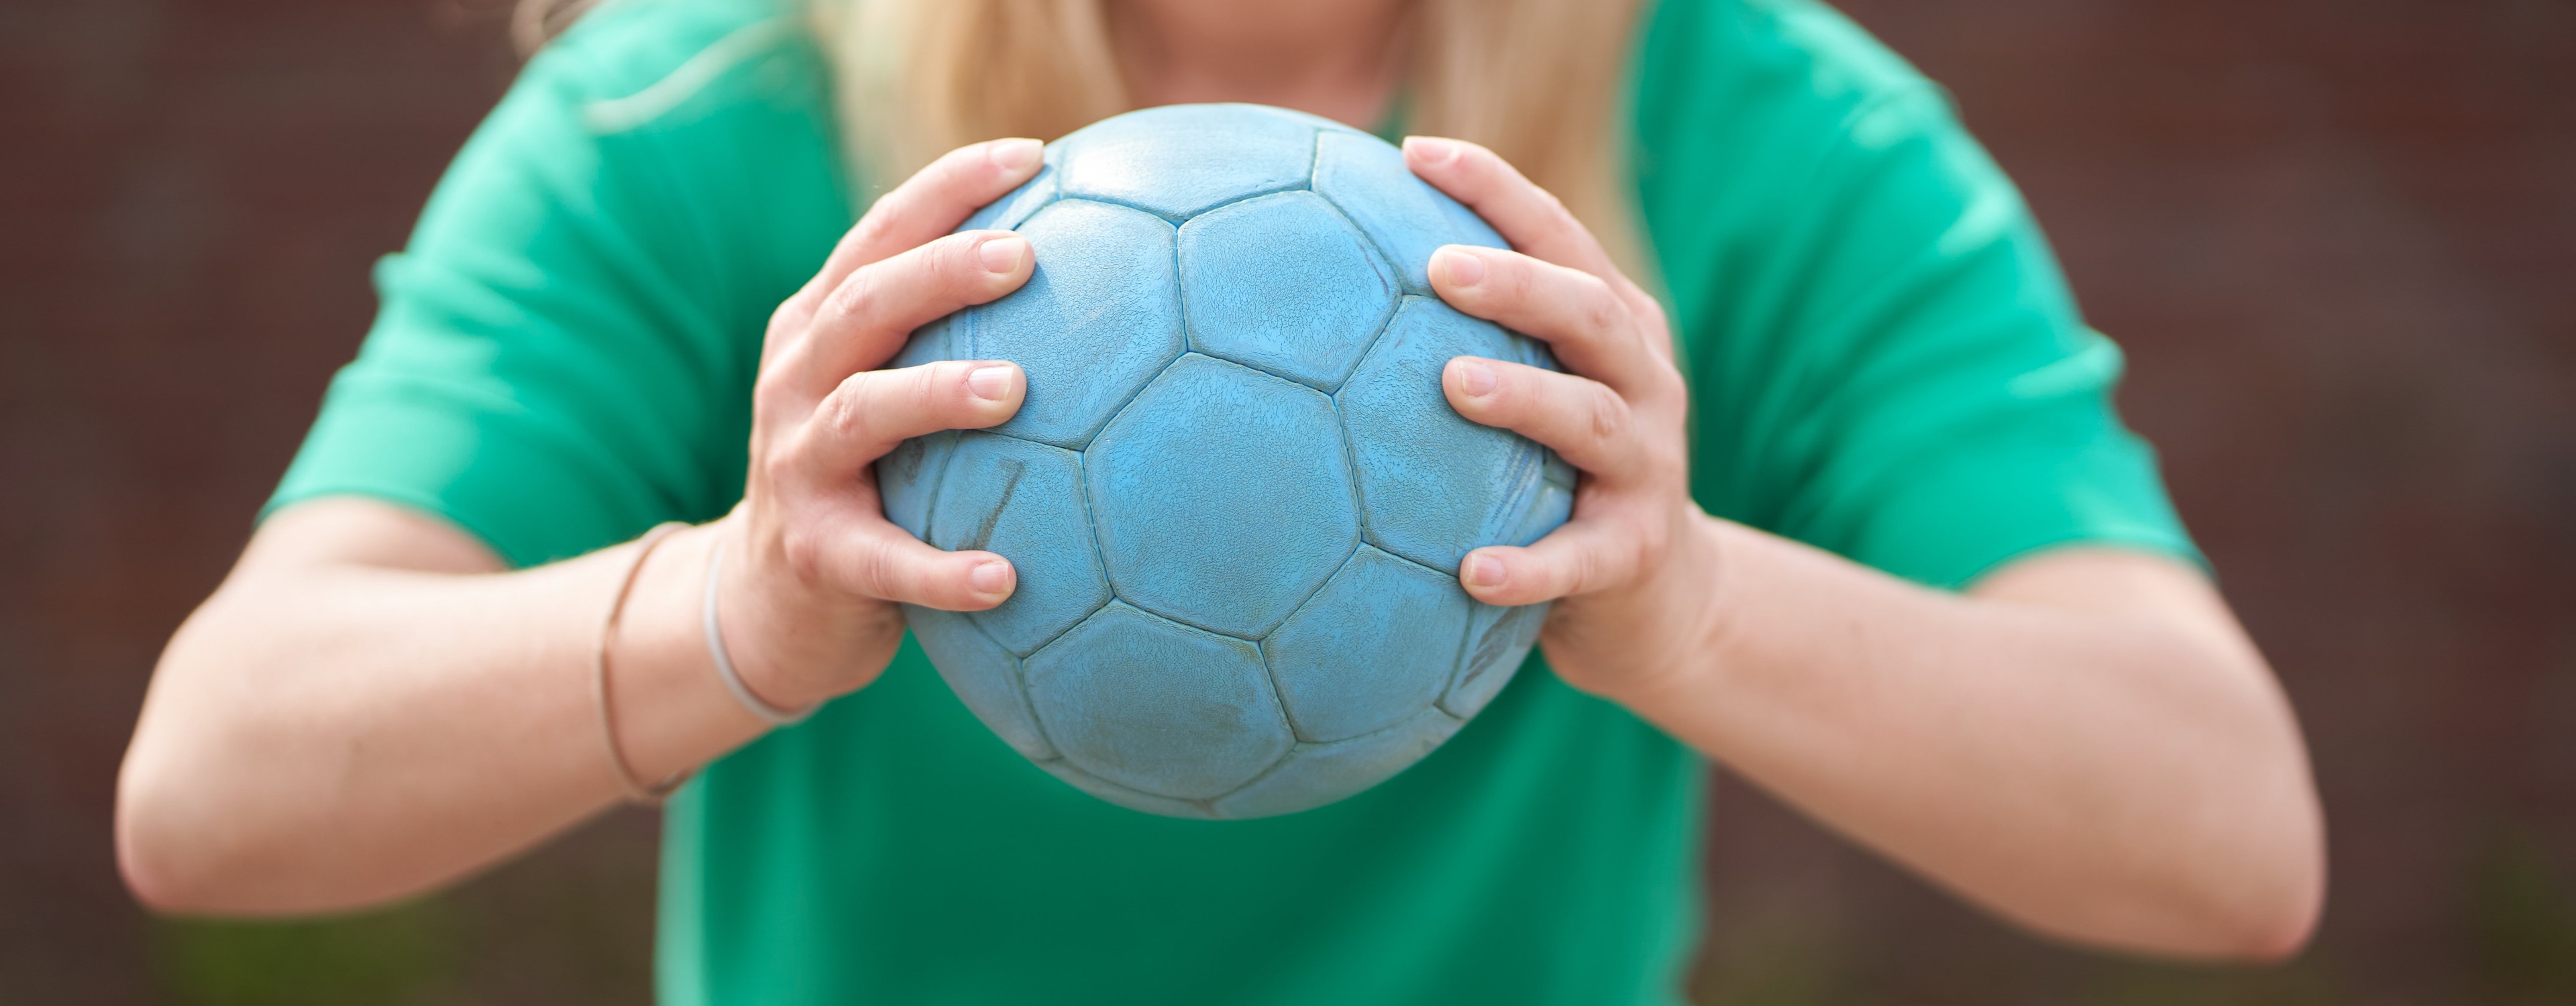 Bild zeigt Mädchen mit einem Handball